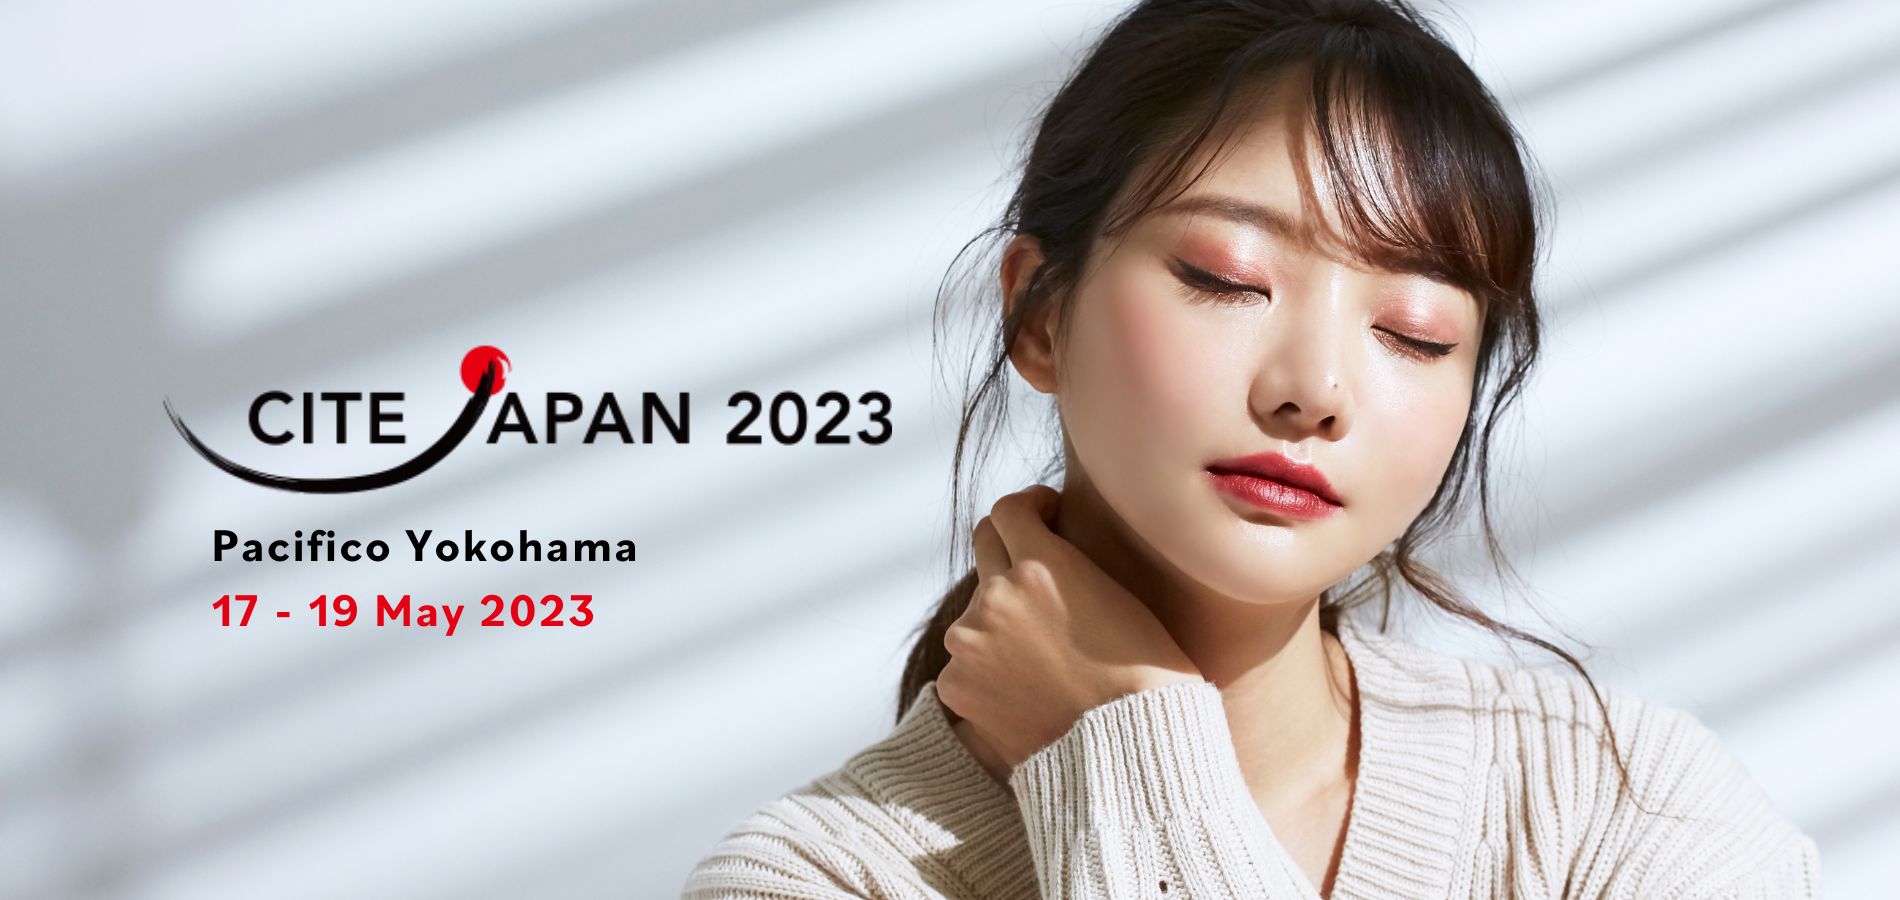 ภาพเด่นของเว็บไซต์ CITE Japan 2023